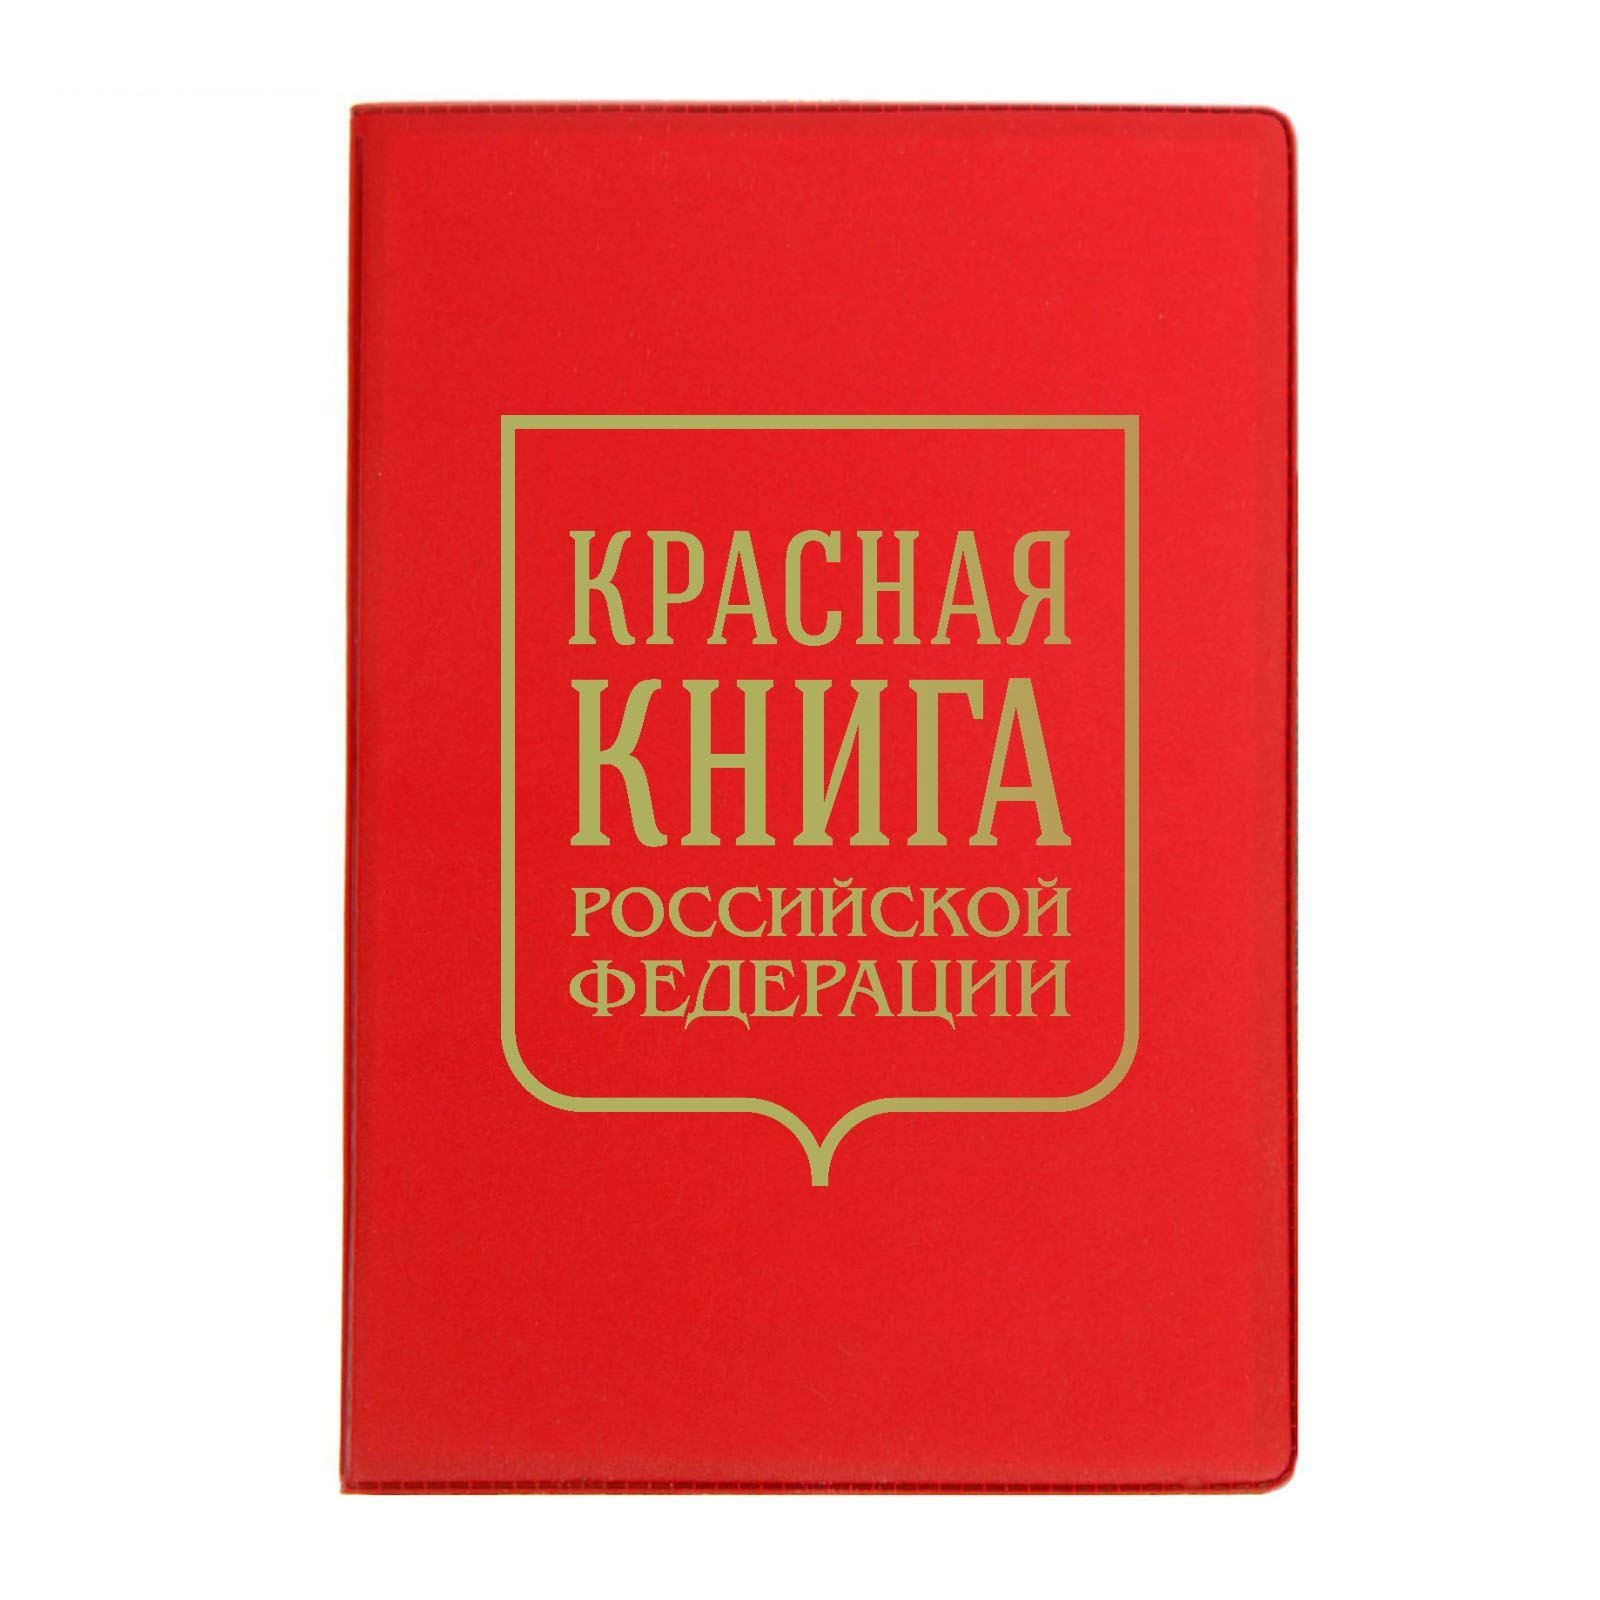 Красная книга д